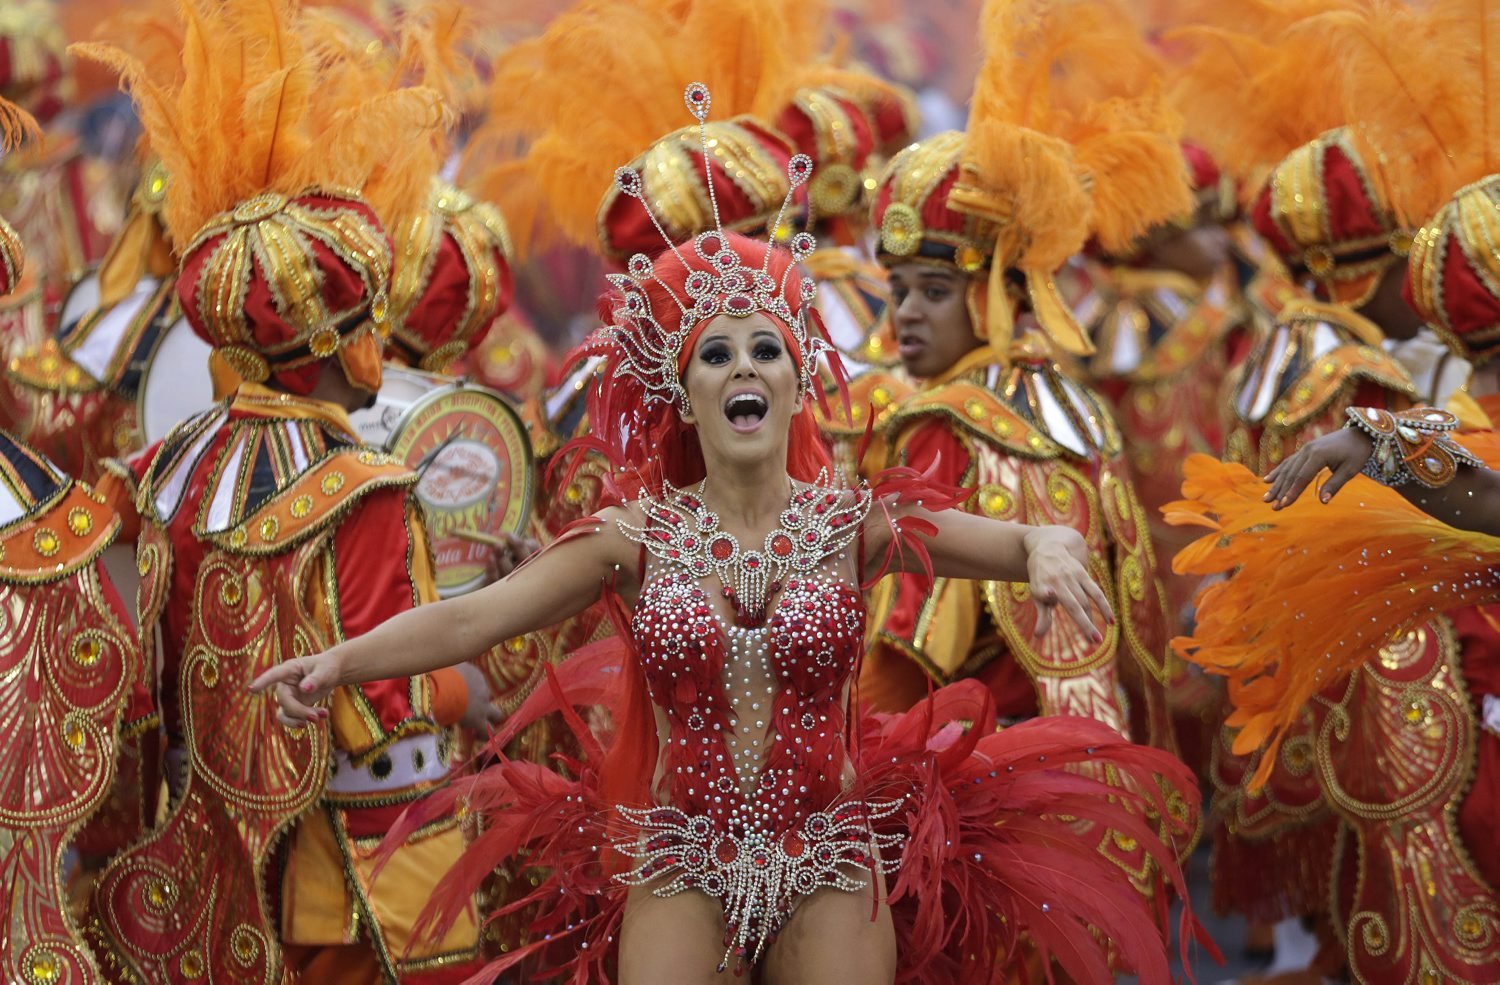 Carnival. Маскарад в Рио де Жанейро. Первый карнавал в Рио-де-Жанейро. Карнавал в Бразилии. Бразильский карнавал шествие.